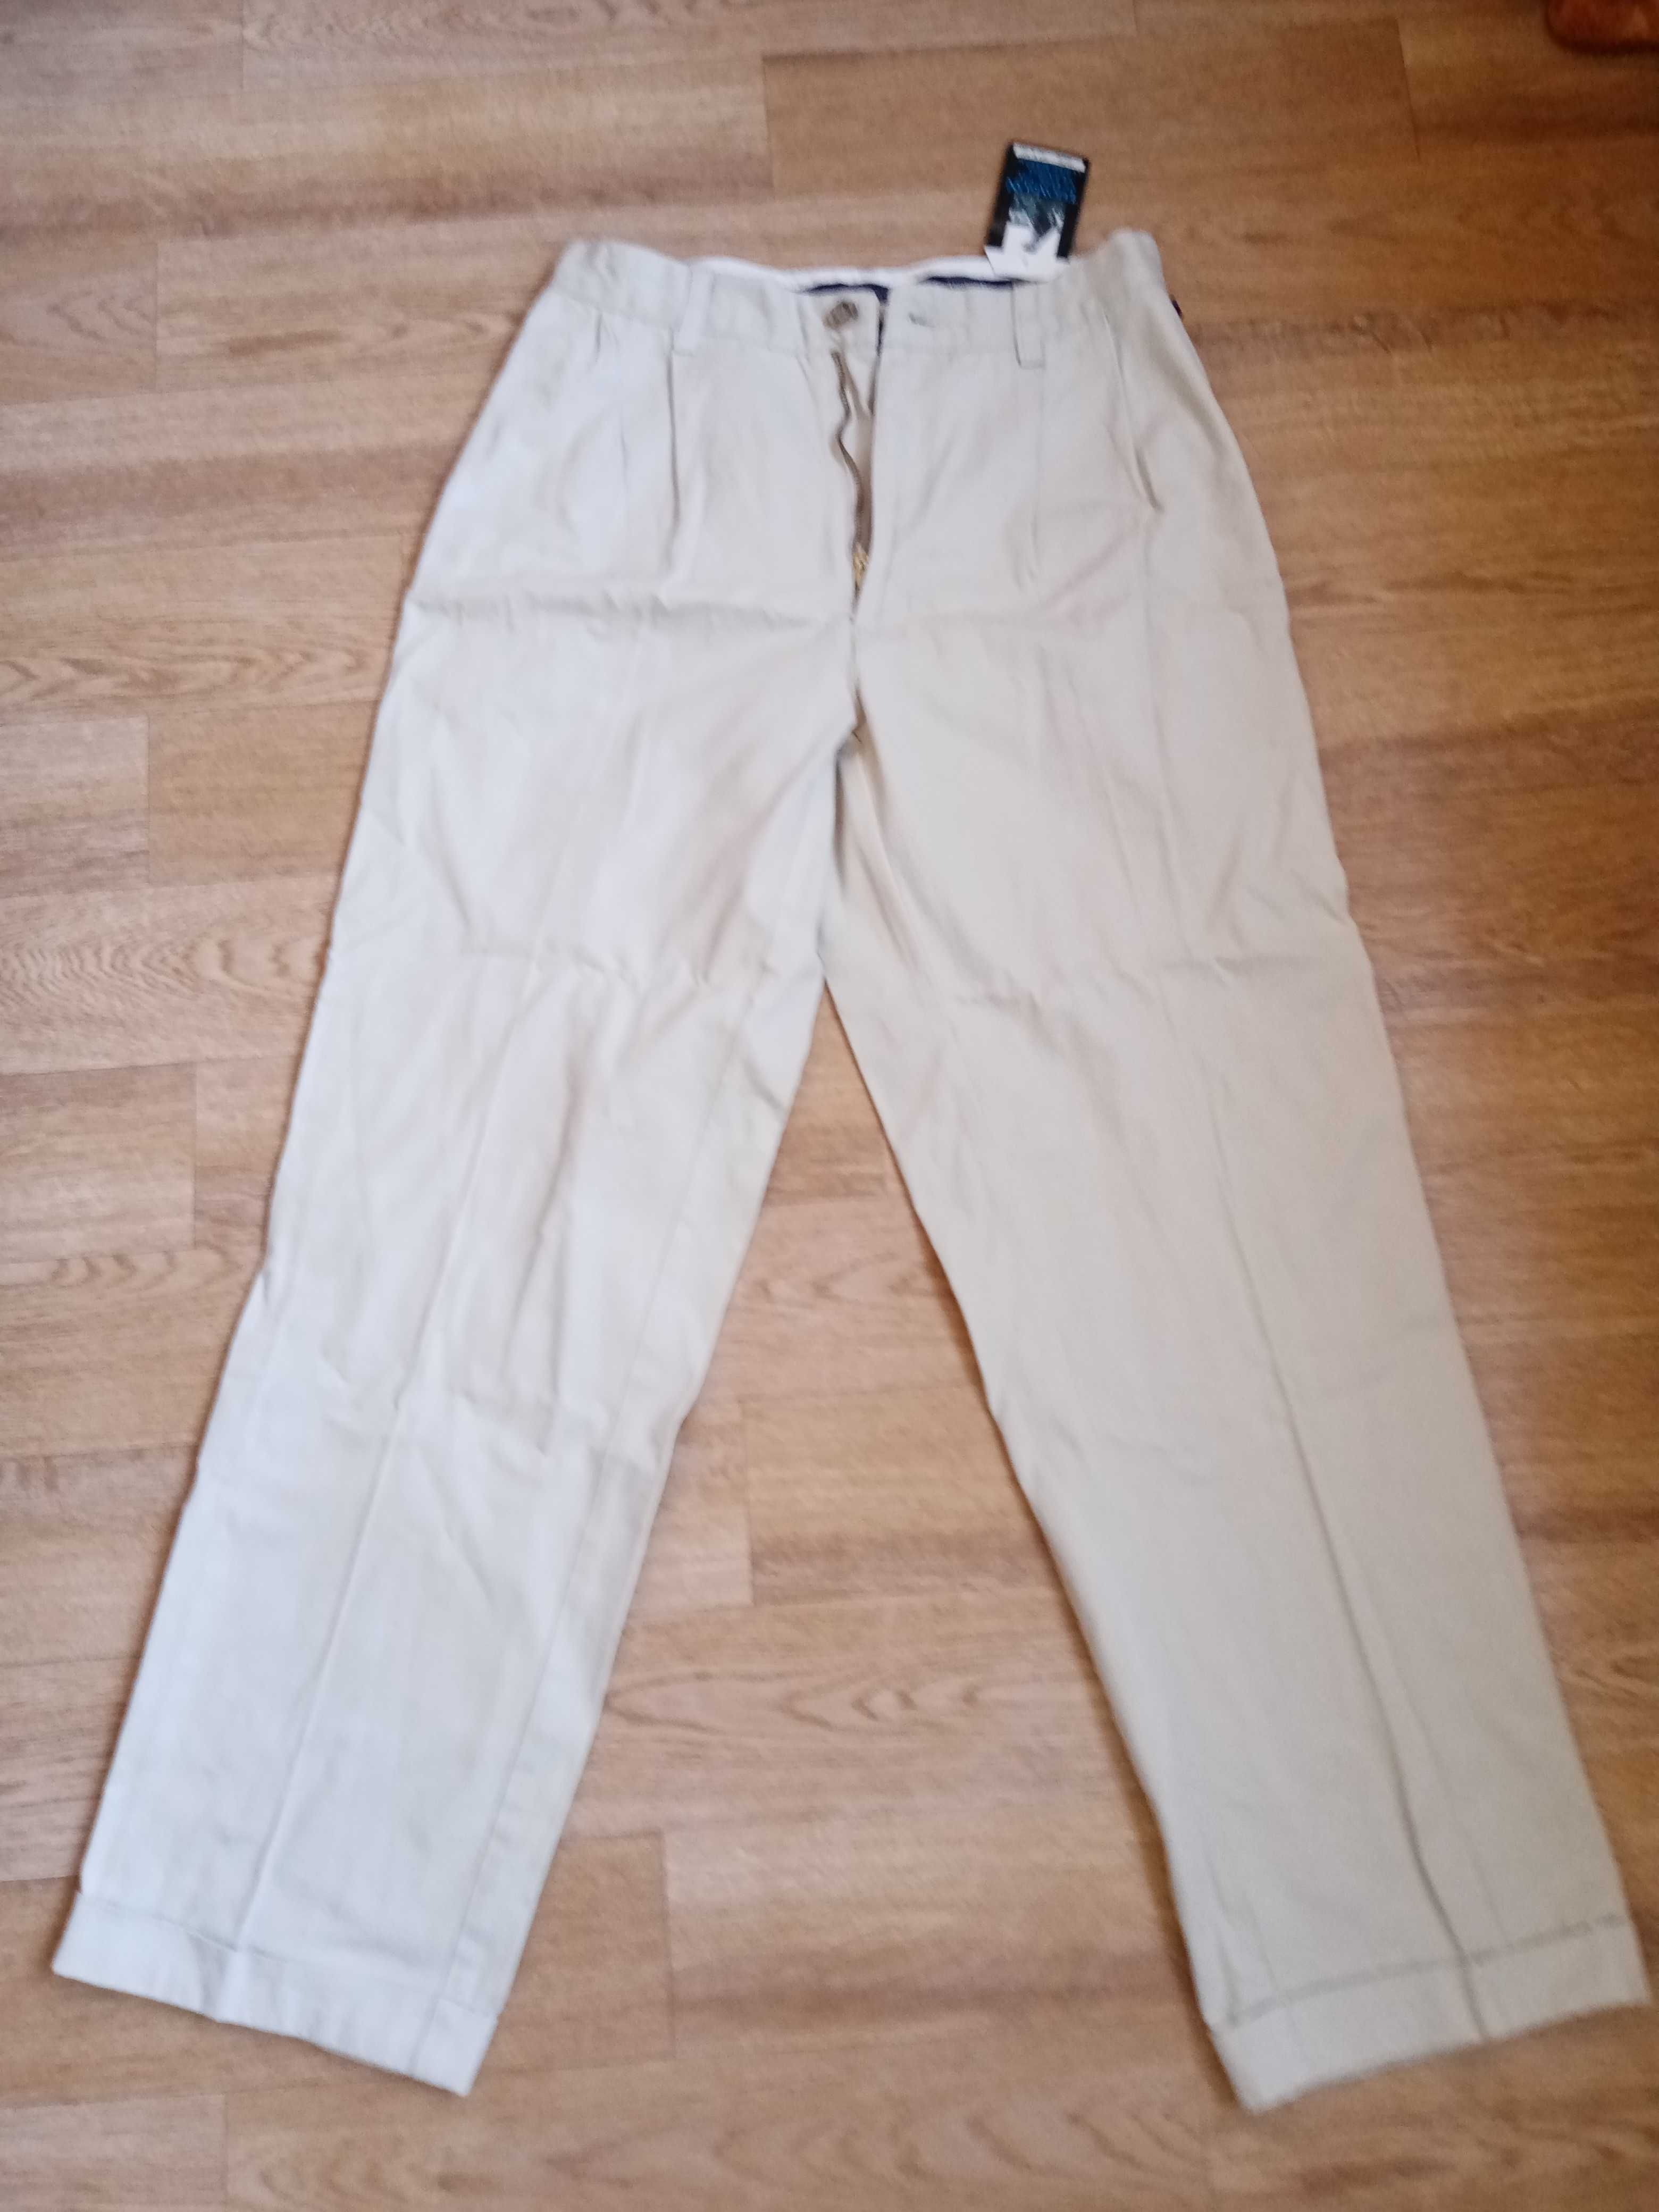 Брюки джинсовые женские новые, с этикеткой, 46-48 размер